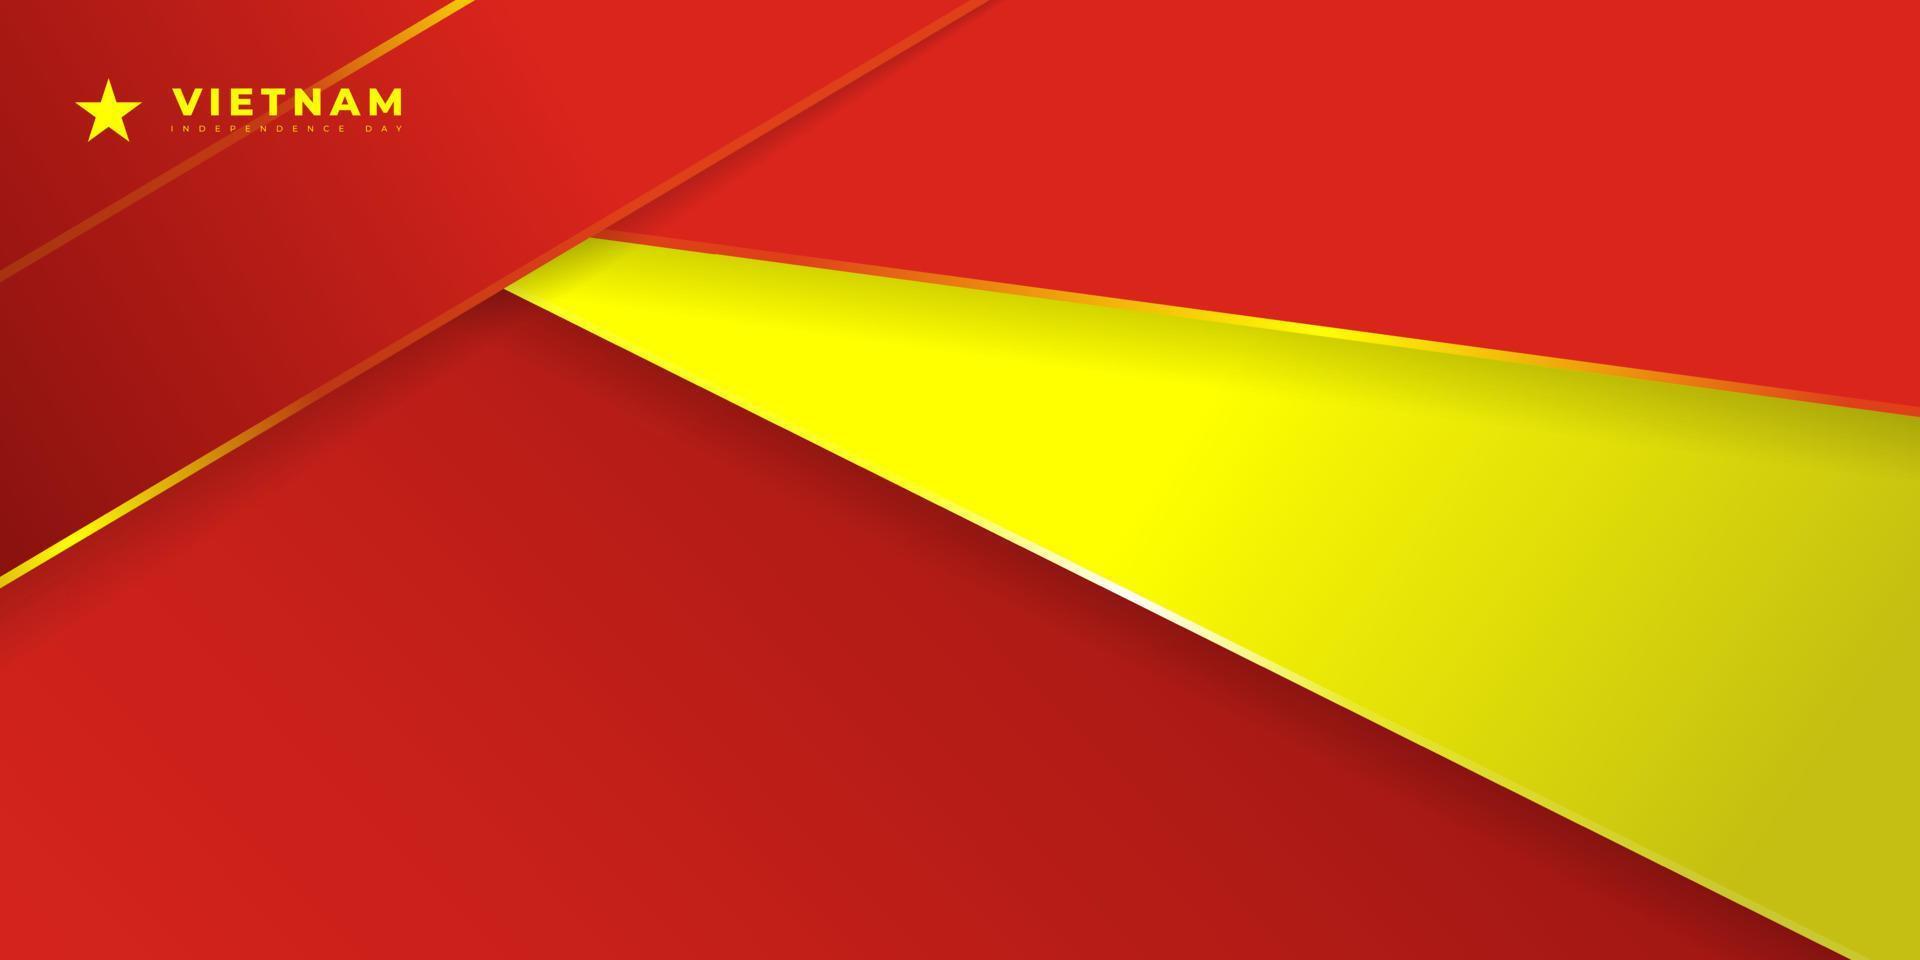 conception de fond géométrique rouge jaune pour le jour de l'indépendance du vietnam vecteur